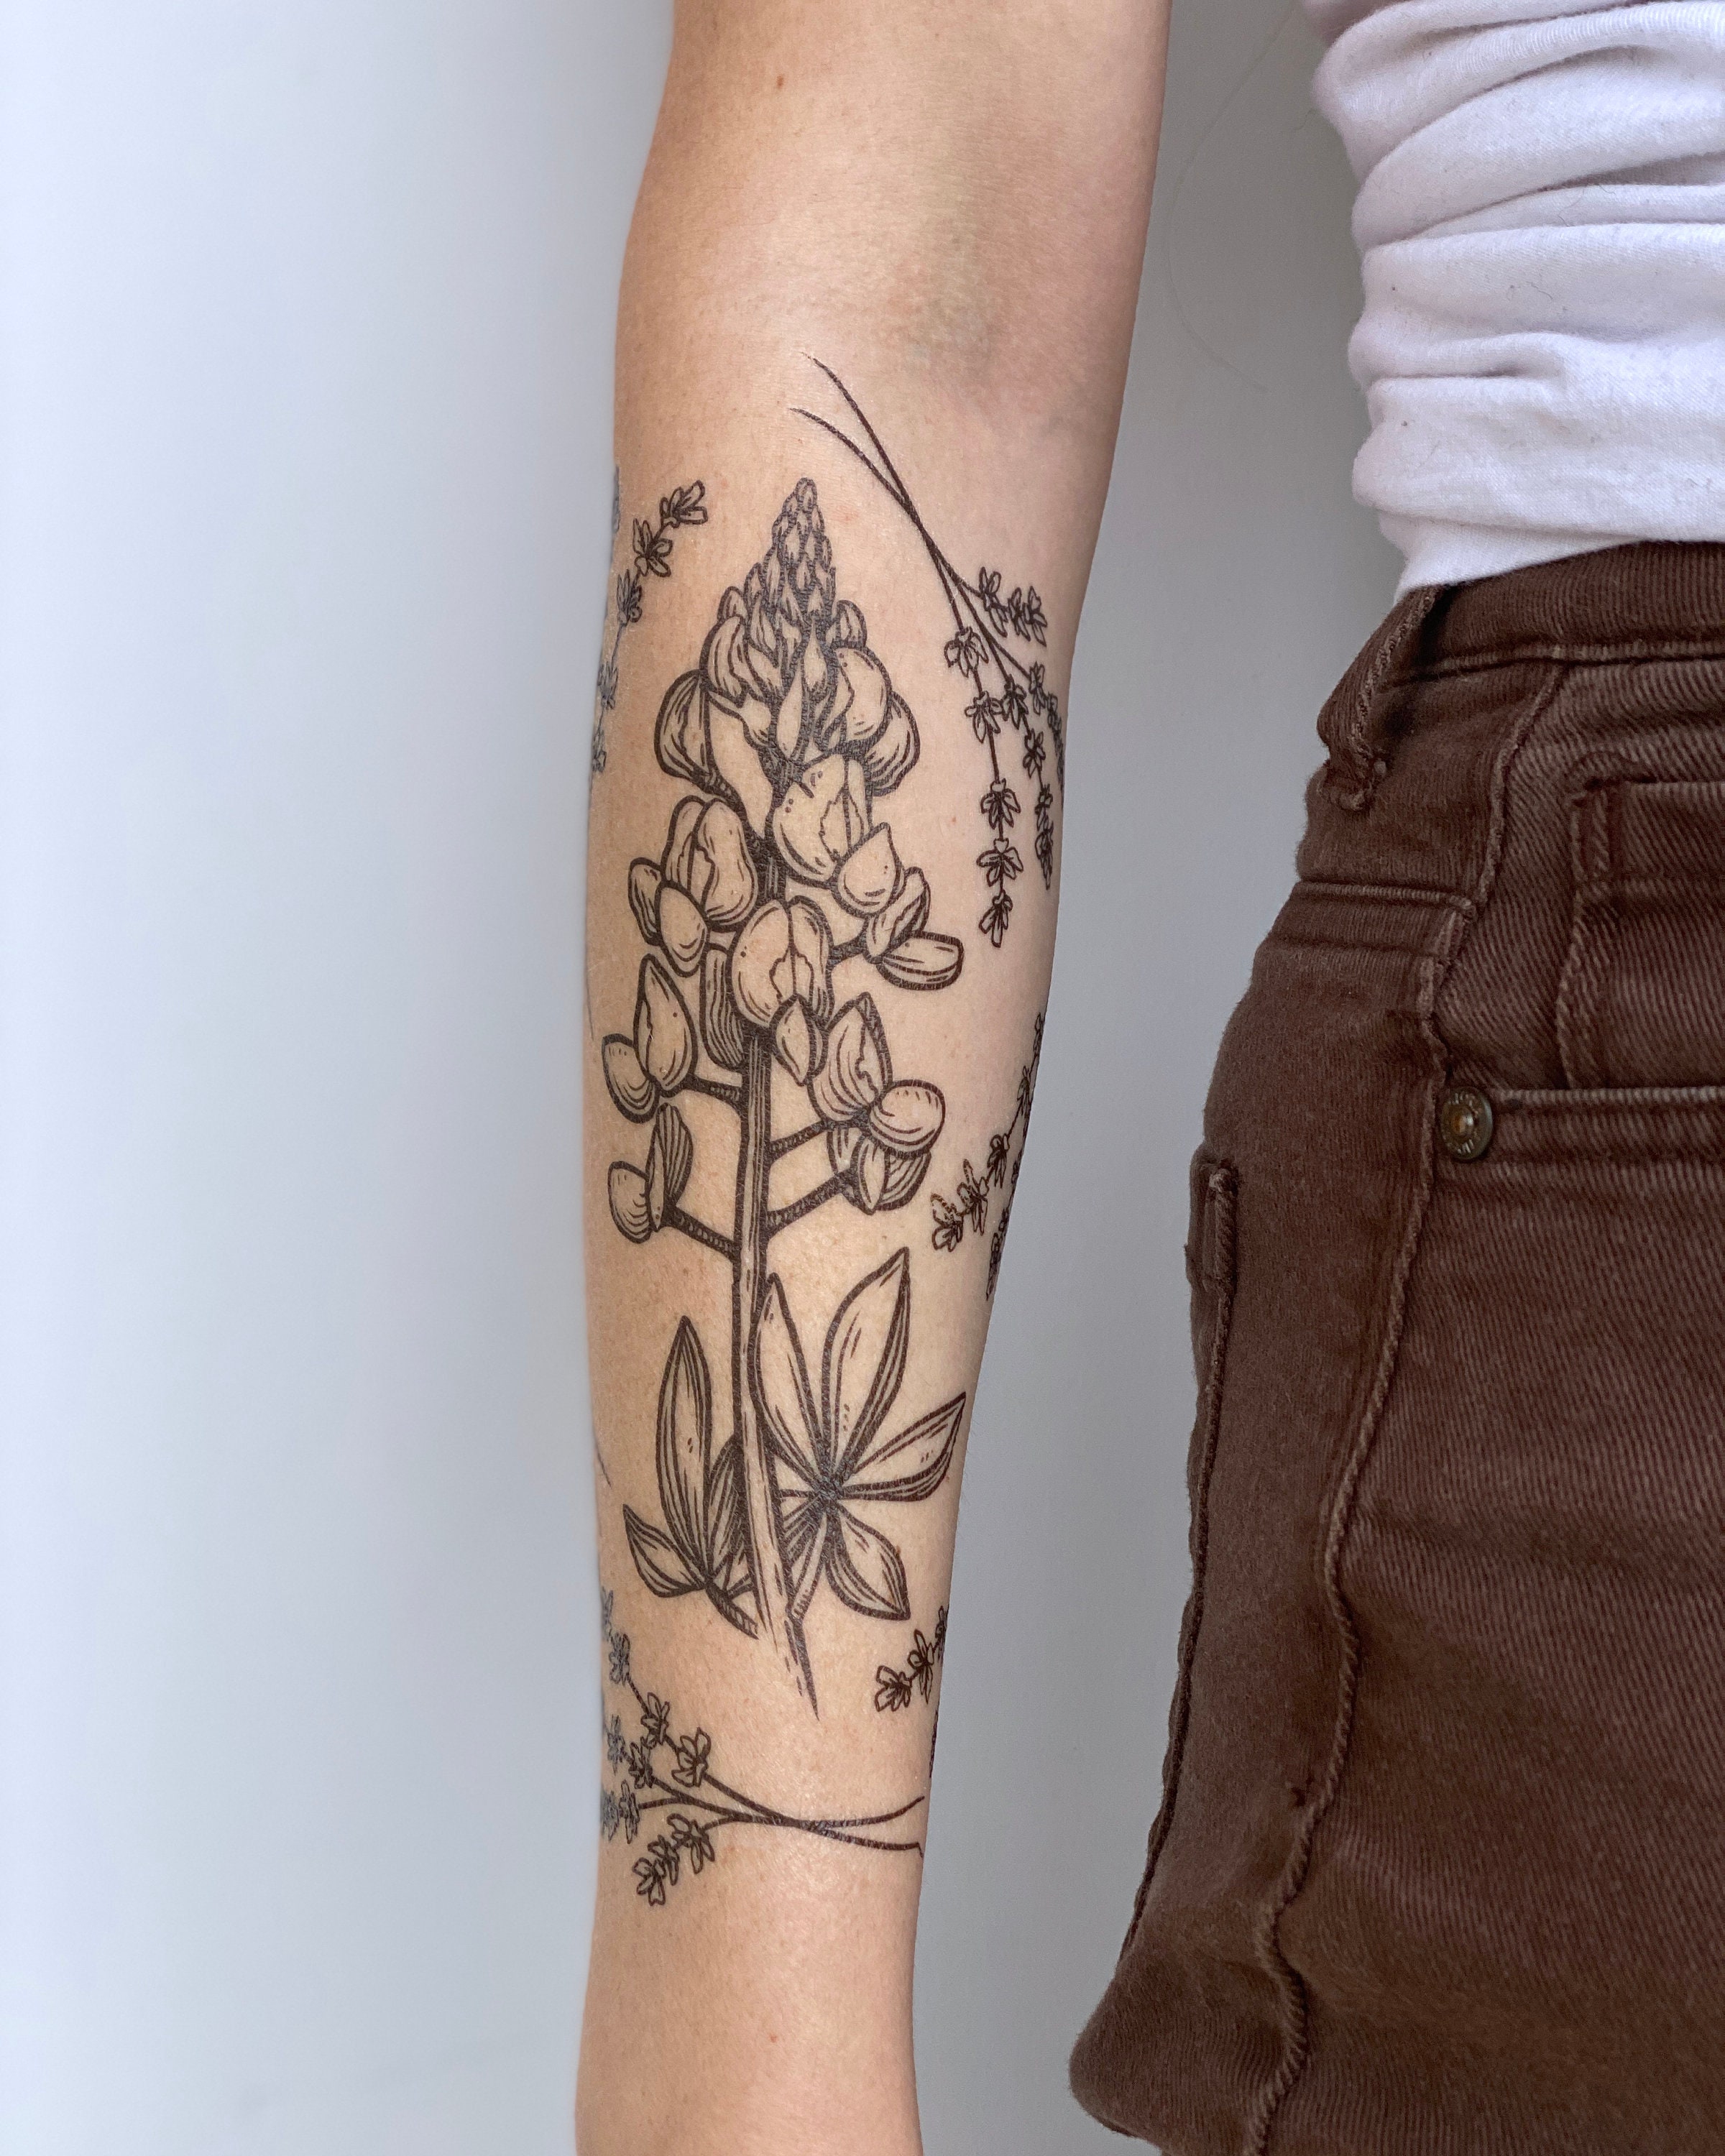 David Lee on LinkedIn: #skull #chrysanthemum #tattoo #tattoos #tattooed  #inked #tatt #tatts…